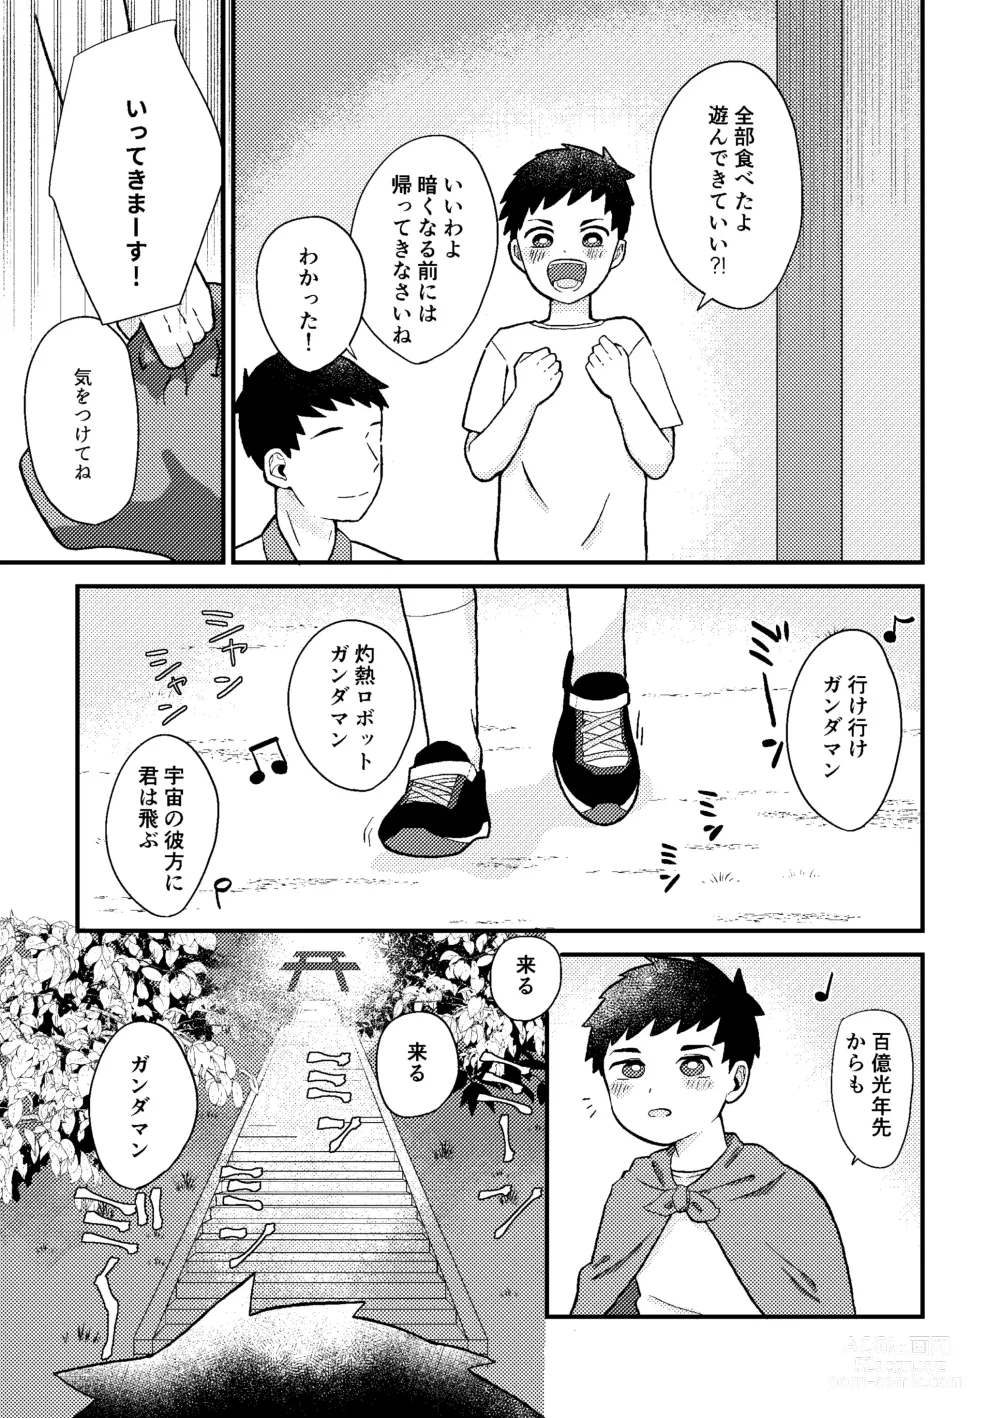 Page 6 of doujinshi Saigo no Natsuyasumi